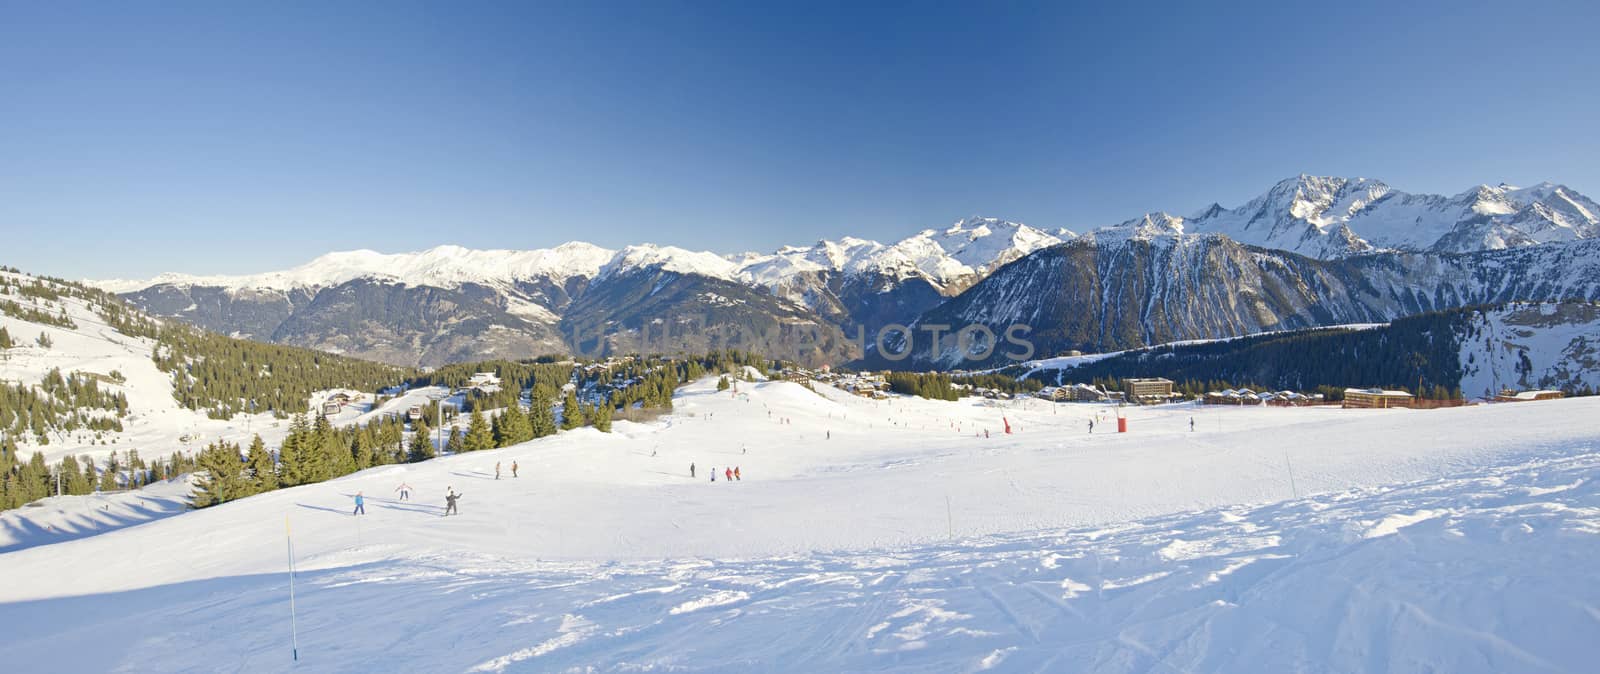 View over a ski resort by paulvinten